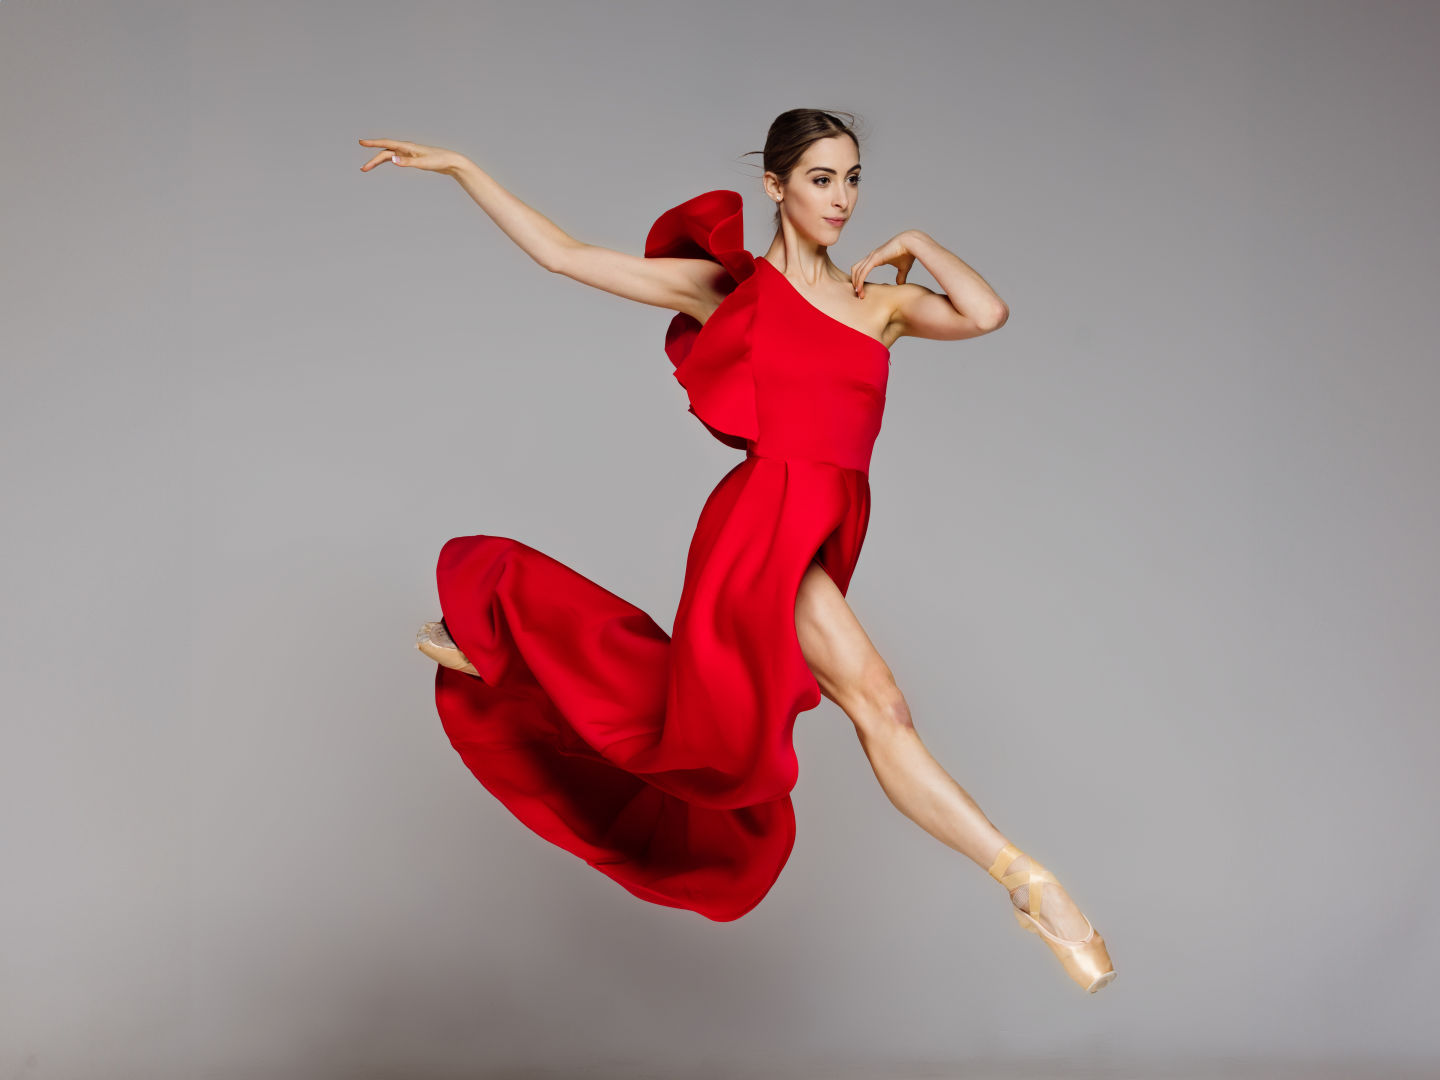 Dancer dreamer - Queensland Ballet - Queensland Ballet